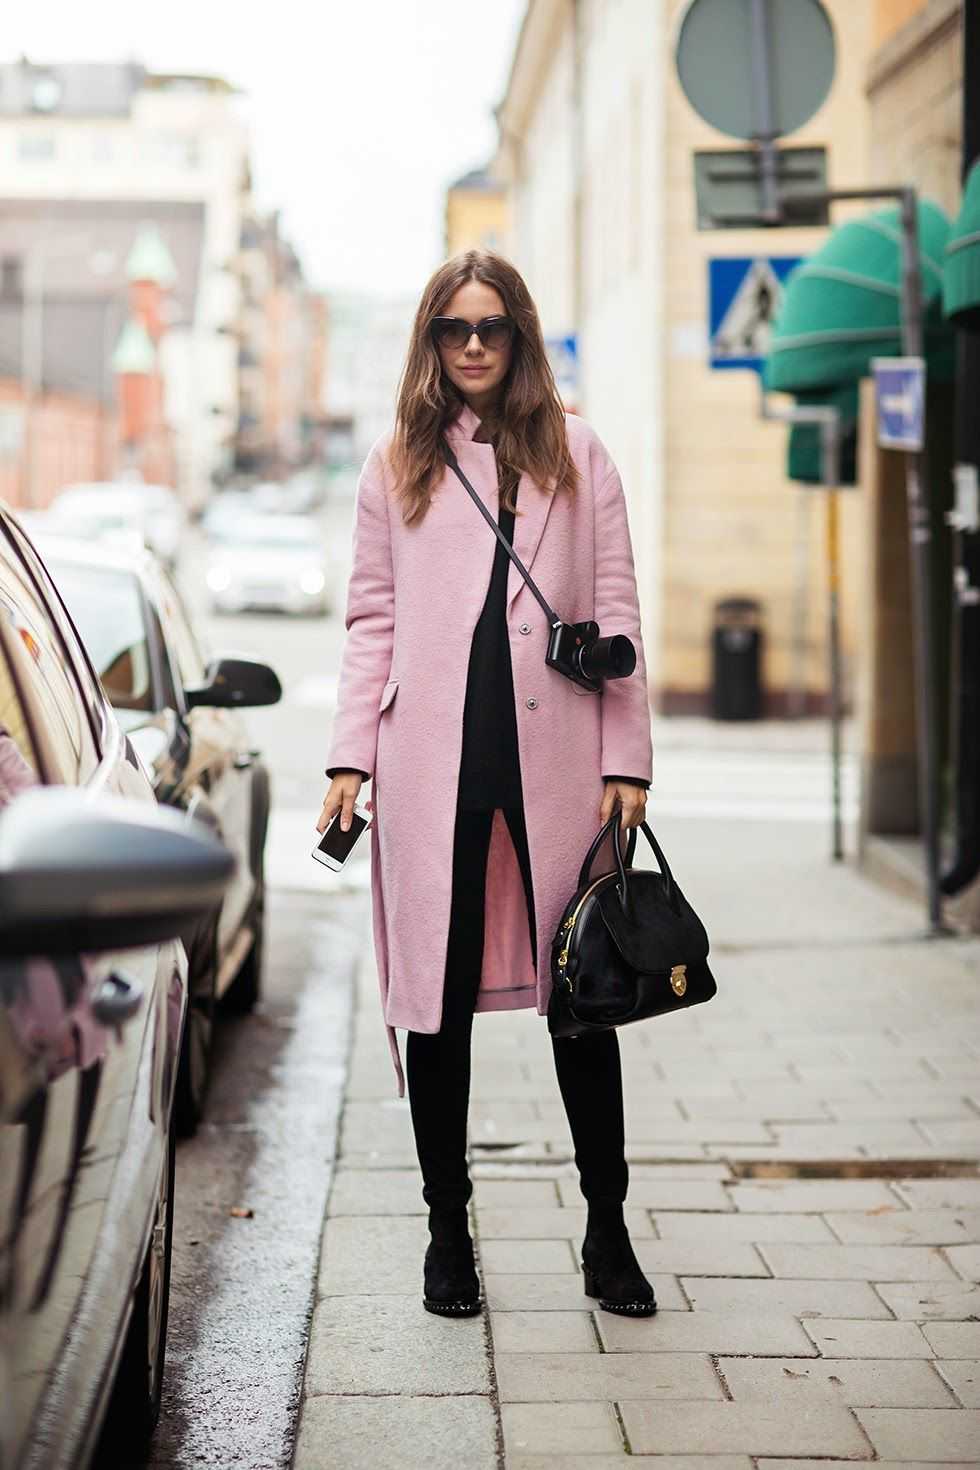 Розовое пальто – хит нескольких последних сезонов С каждым годом все больше дизайнеров используют его при создании коллекций верхней одежды Этот цвет имеет много оттенков и является достаточно универсальным, поэтому особых сложностей с подбором обуви у ва